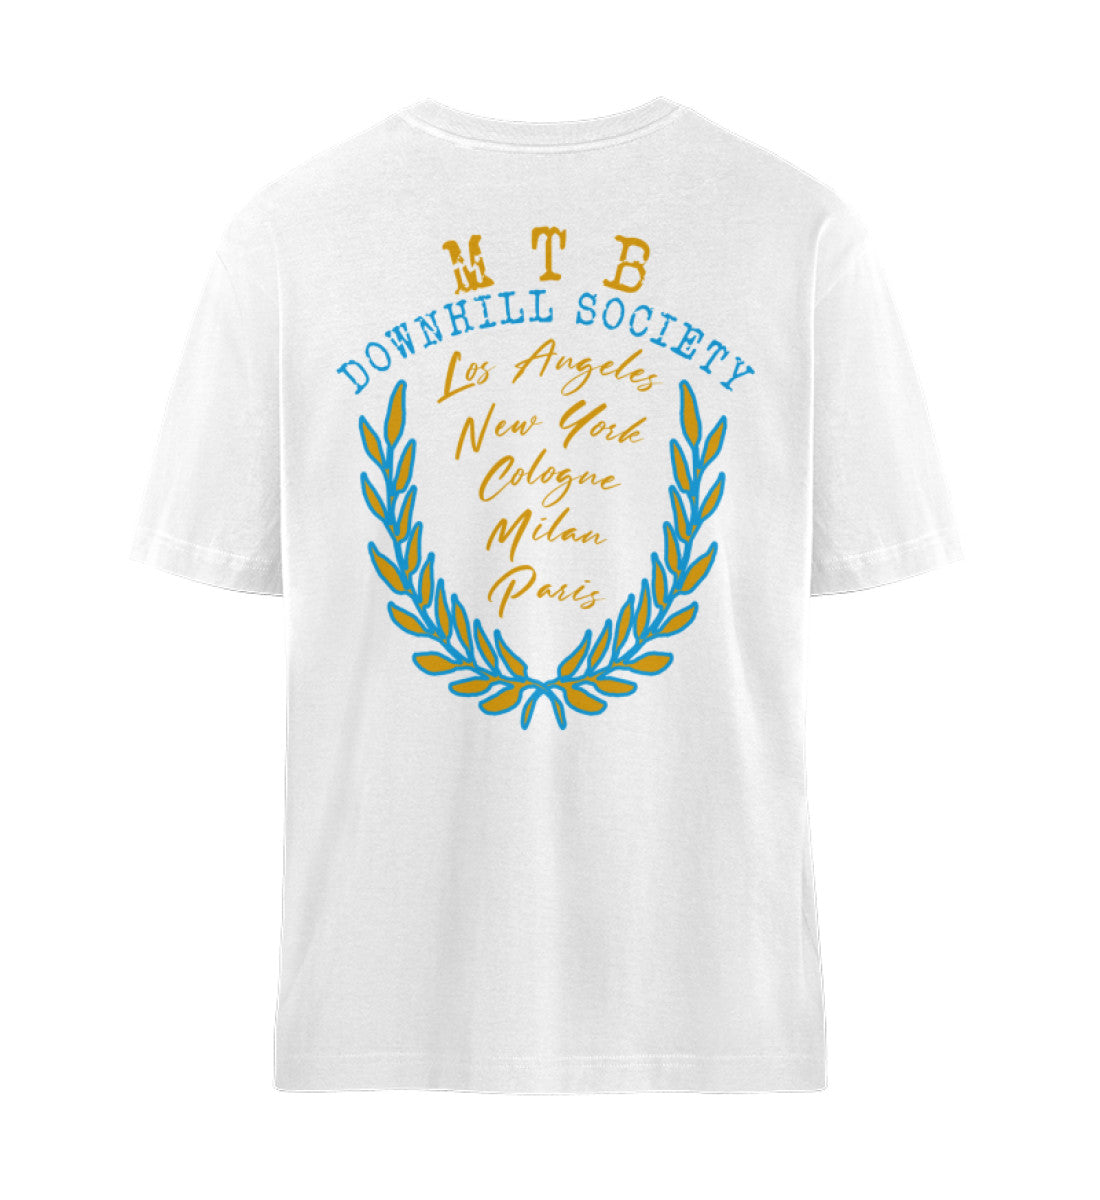 Weißes T-Shirt im Relaxed Fit Unisex für Damen und Herren bedruckt mit Print Design der Freeride Get Dirty Collection von Roger Rockawoo Clothing